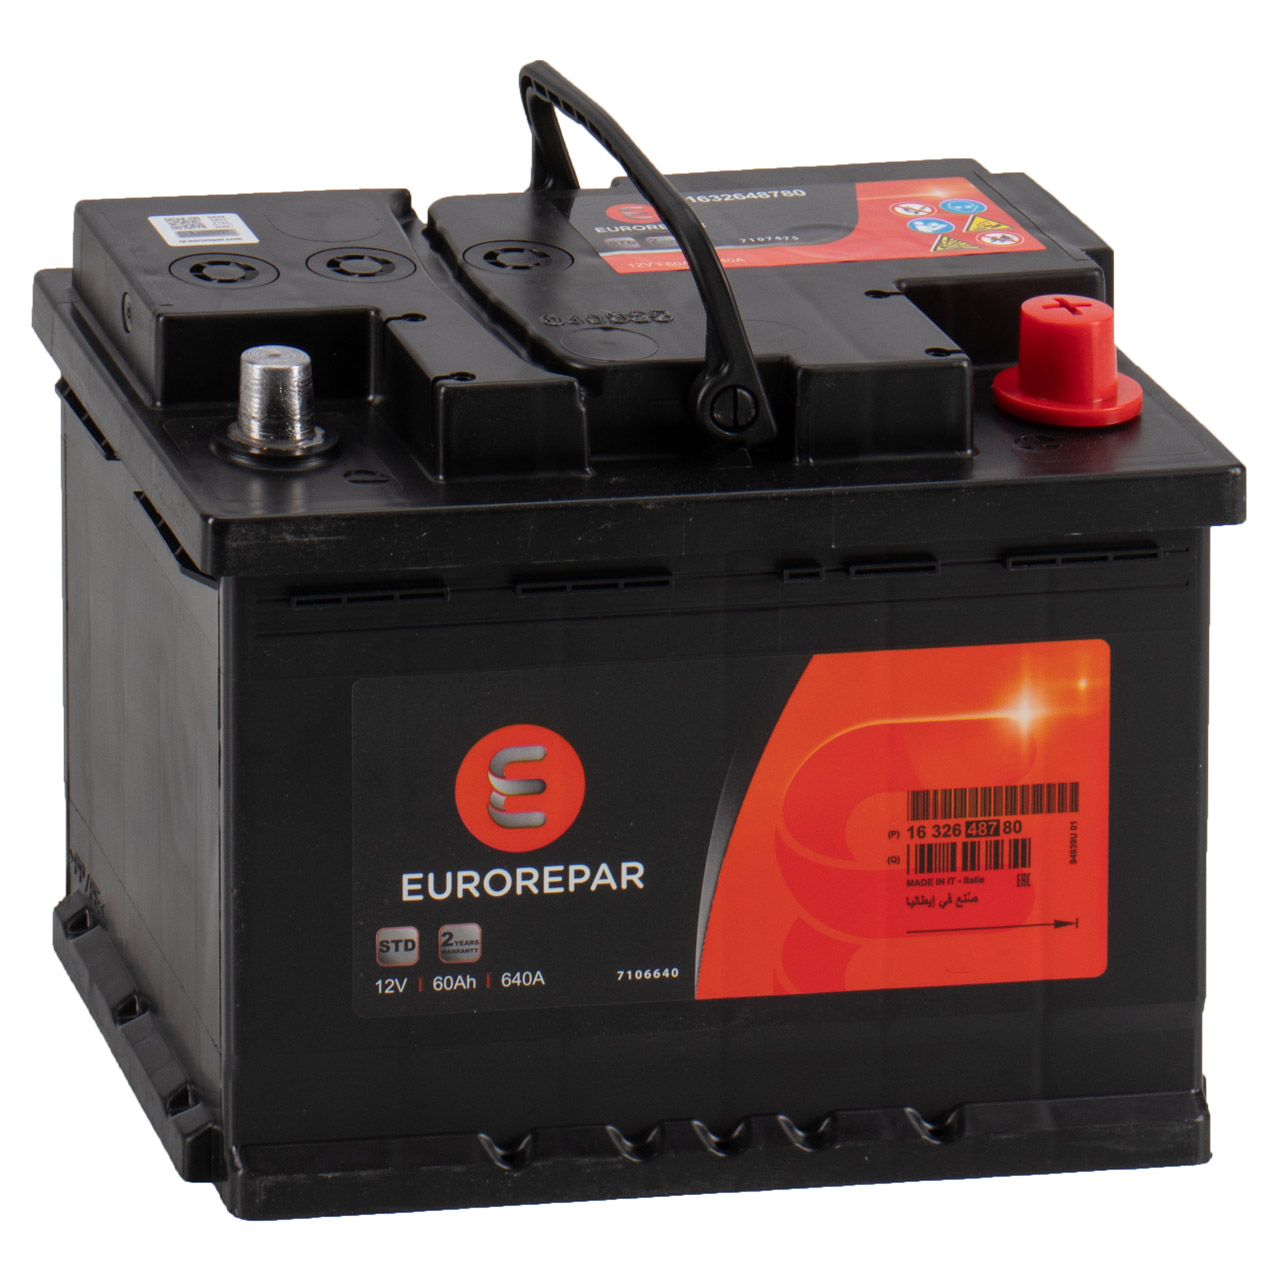 EUROREPAR Starterbatterien / Autobatterien - 16 326 487 80 - ws